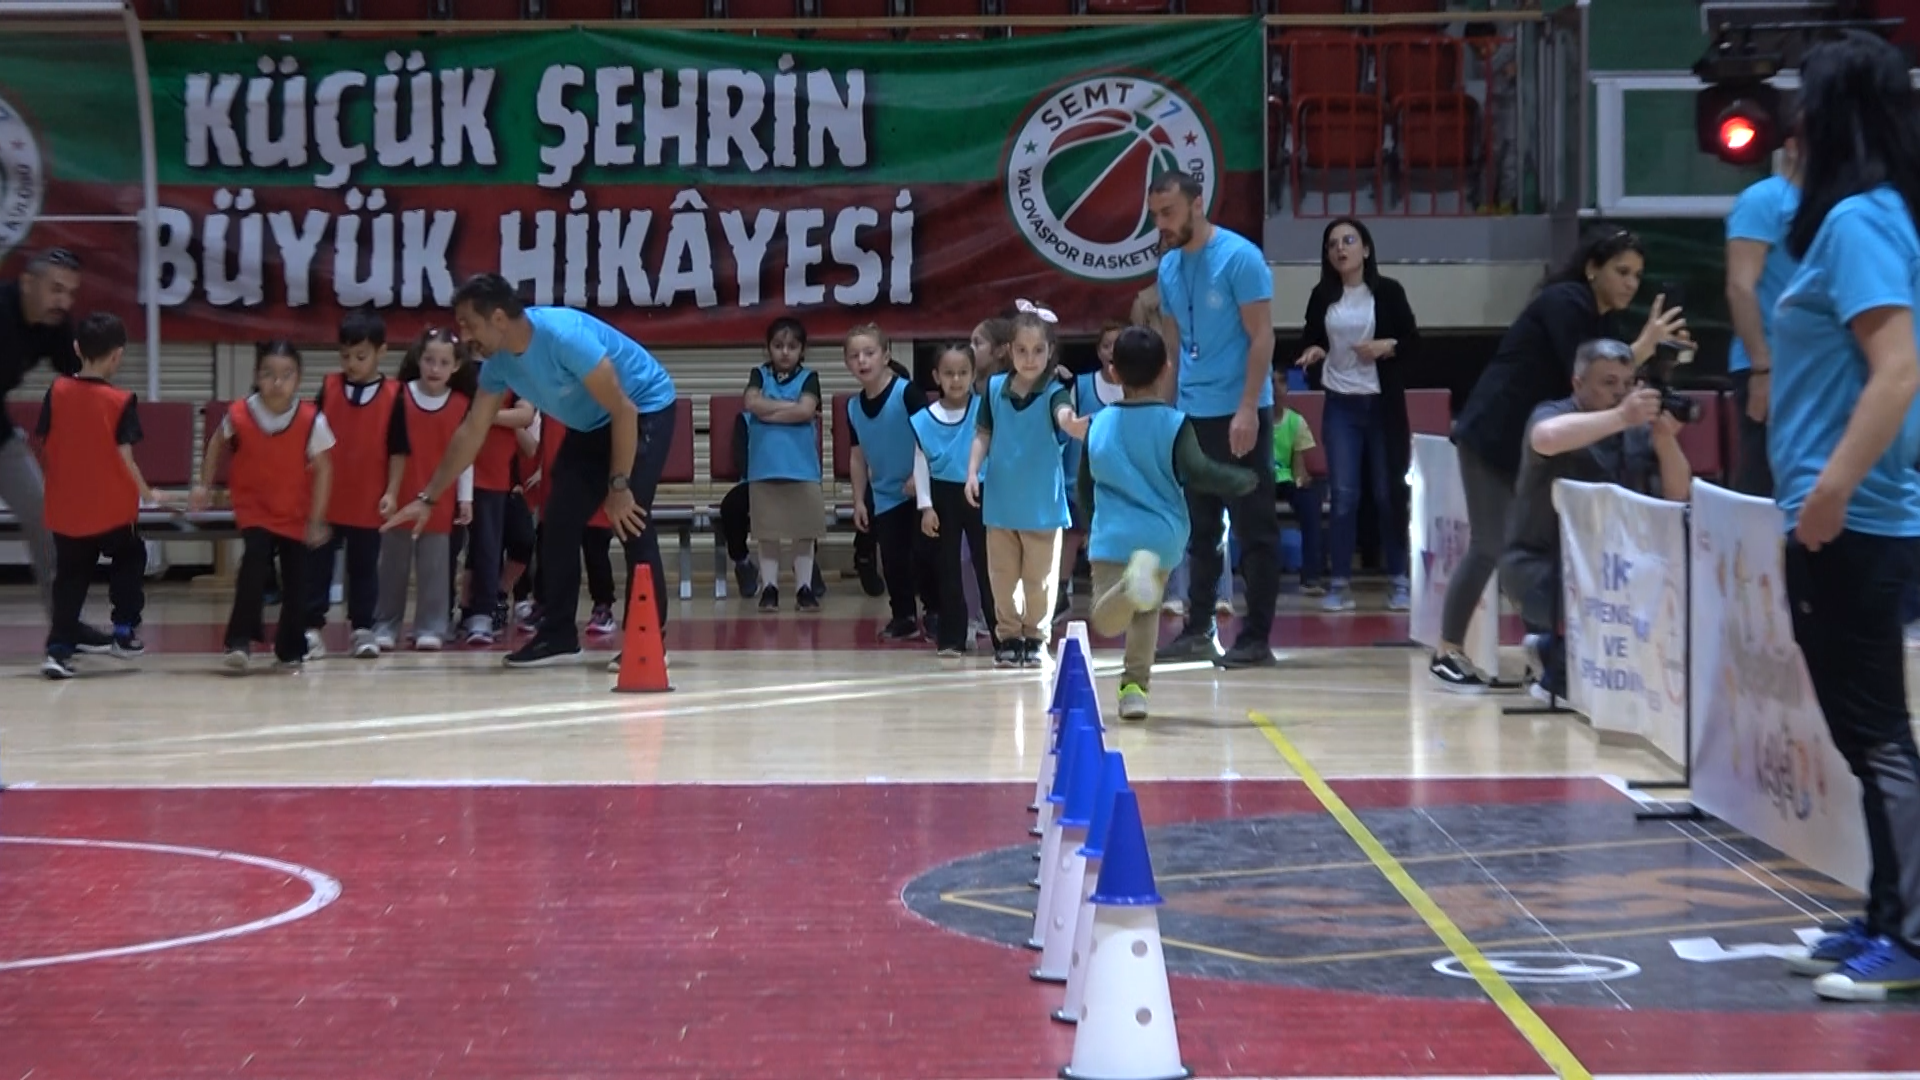 Yalova Cocuk Oyunlari Senlik Ortaokul Ilkokul Senlik Il Genclik Spor Milli Egitim (5)